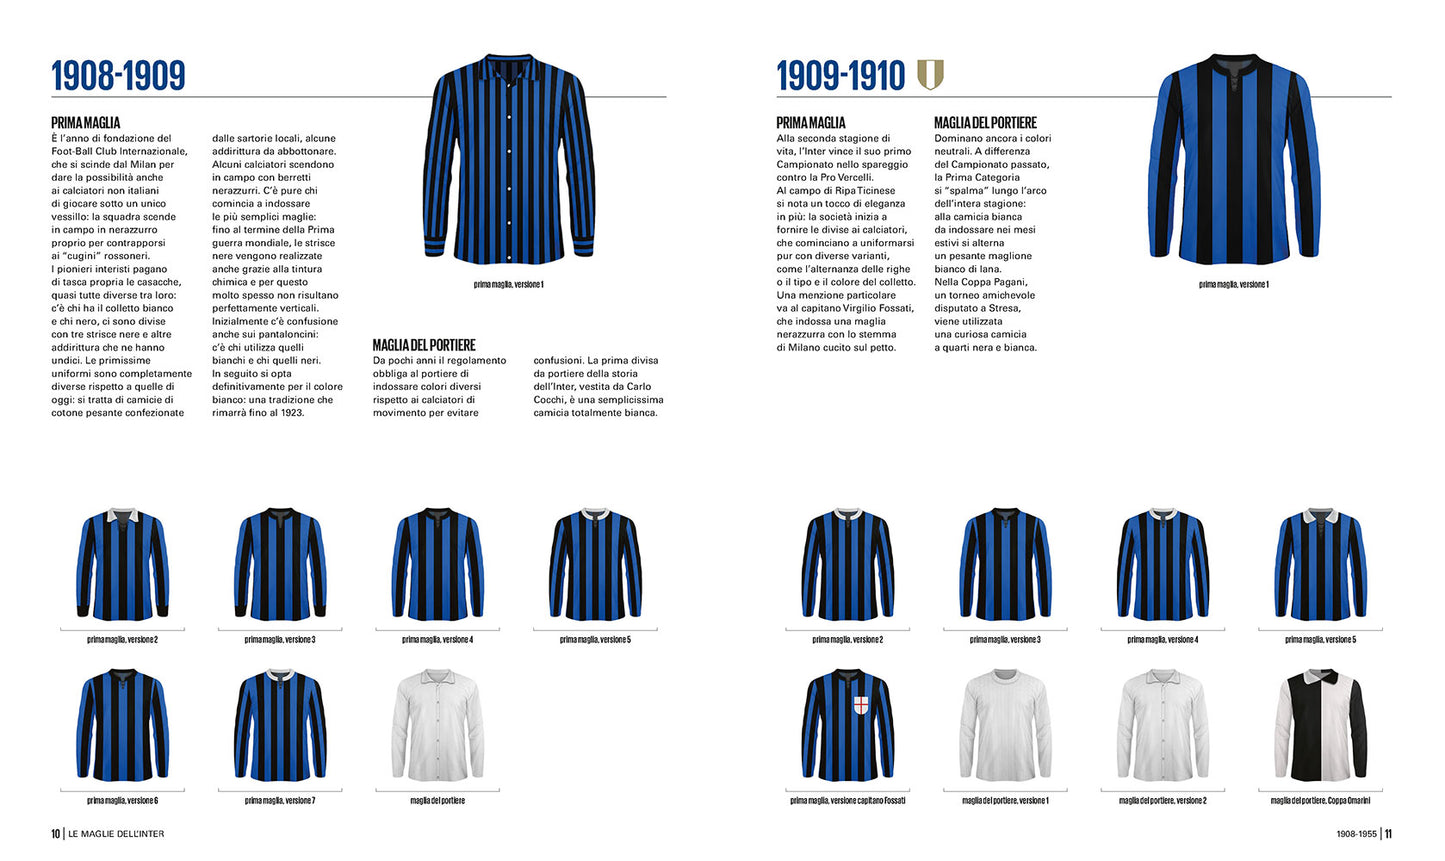 Le maglie dell'Inter::Tutte le divise nerazzurre dal 1908 a oggi